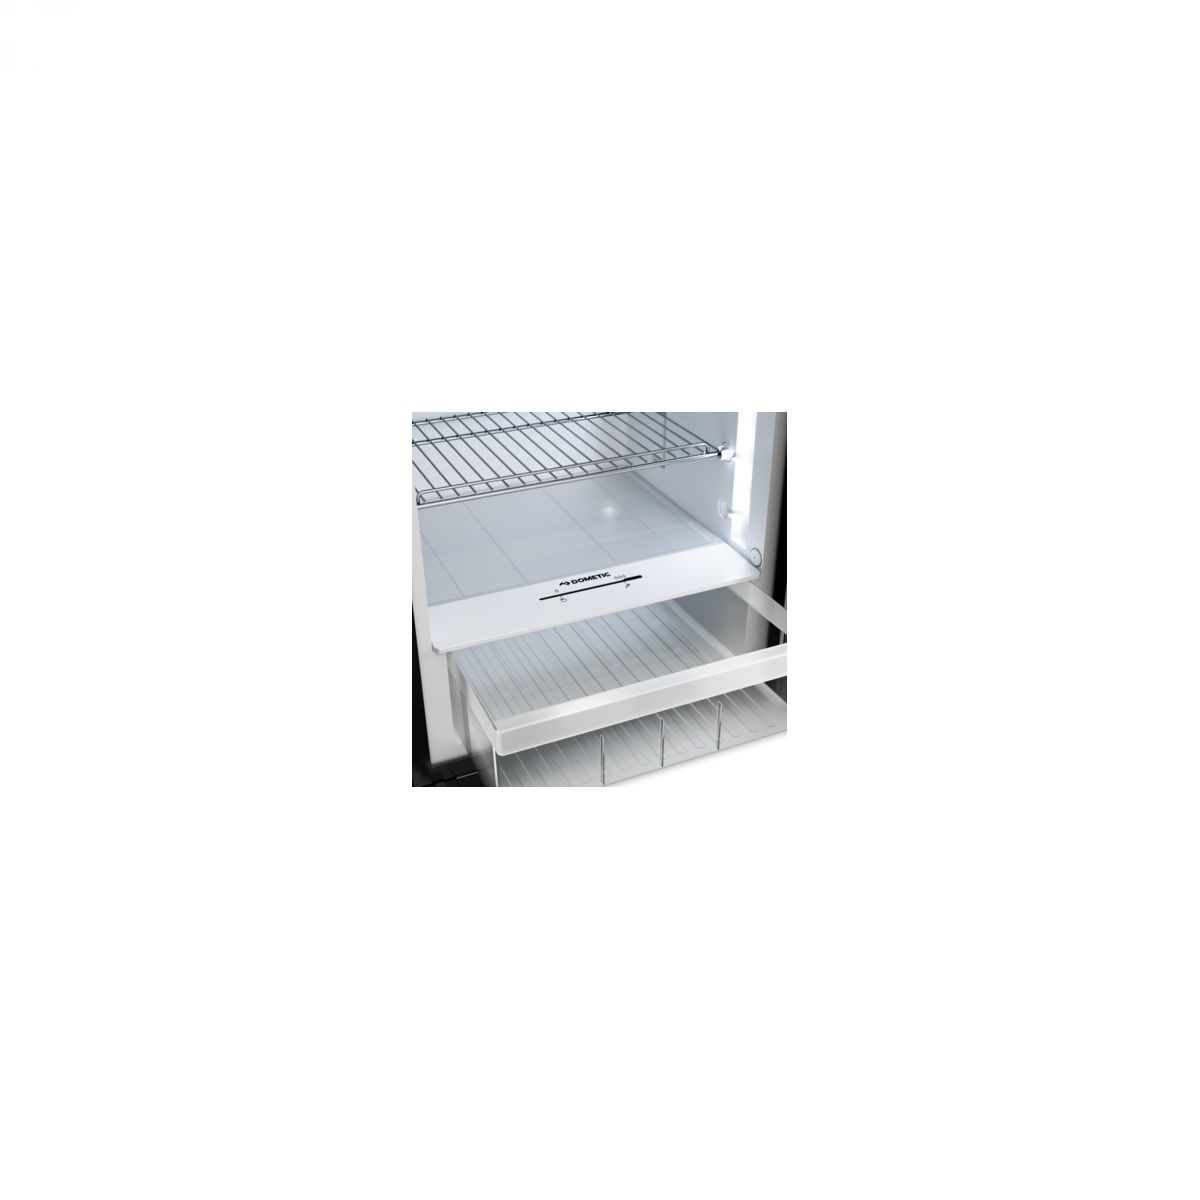 DOMETIC RCD 10,5T kompresorski hladnjak